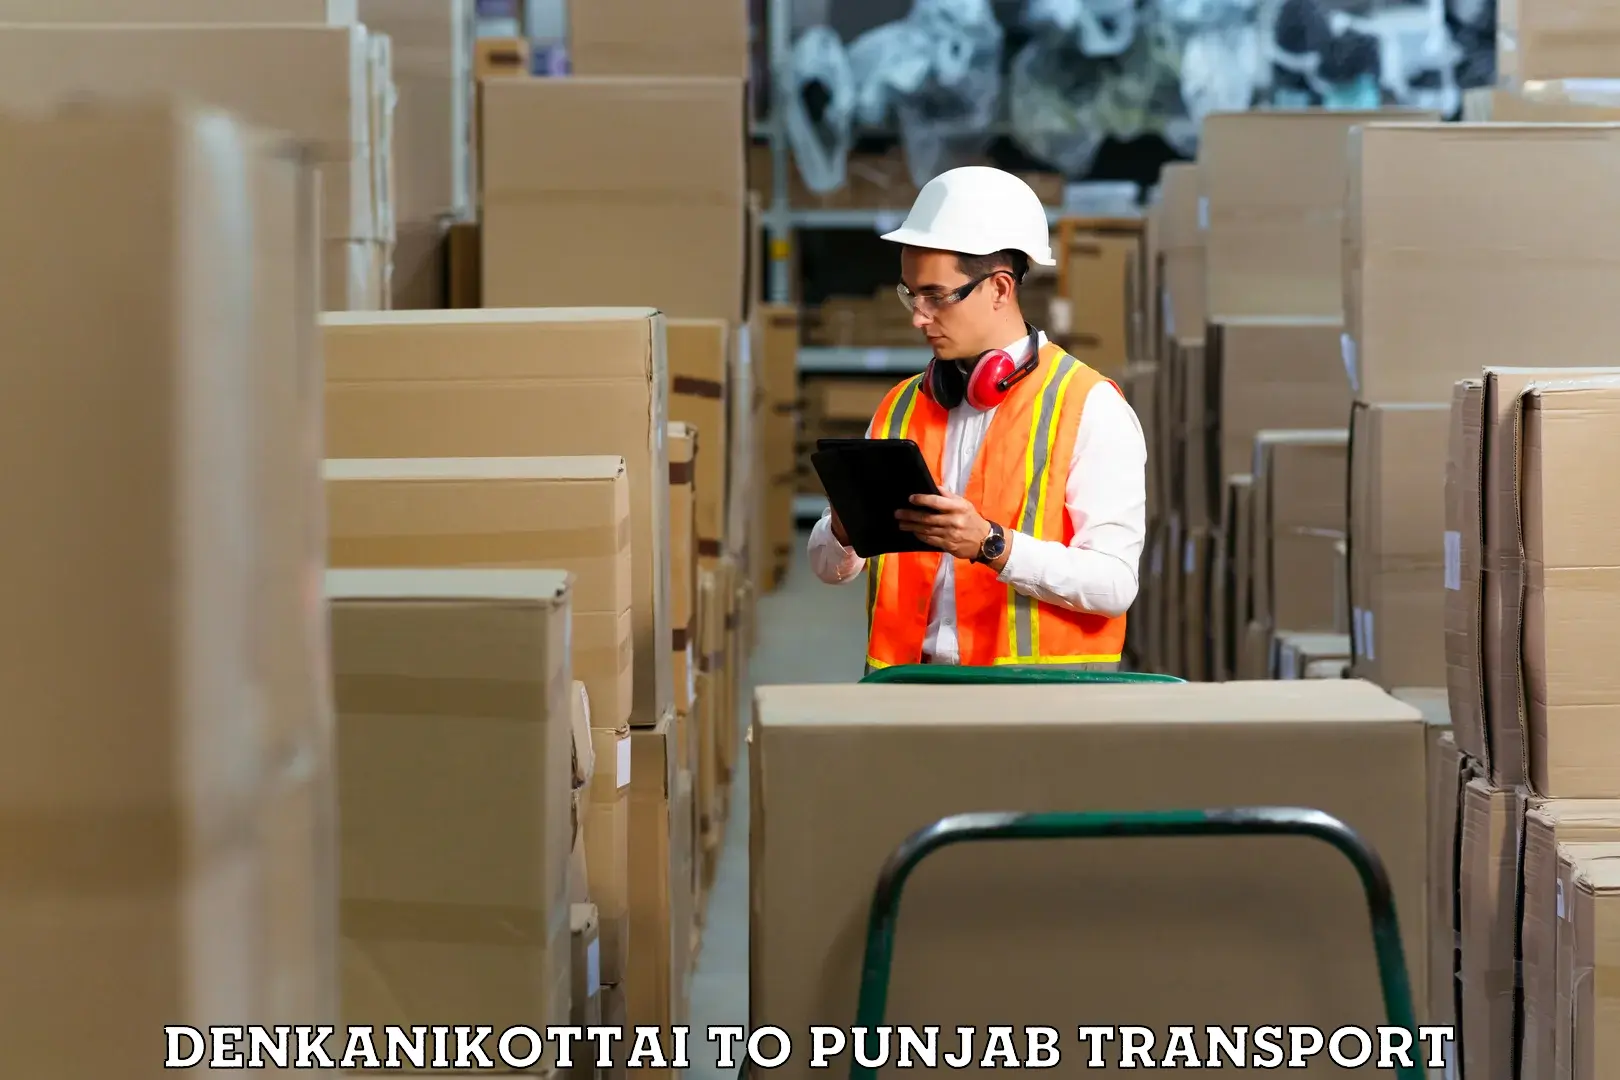 Daily parcel service transport Denkanikottai to Kapurthala